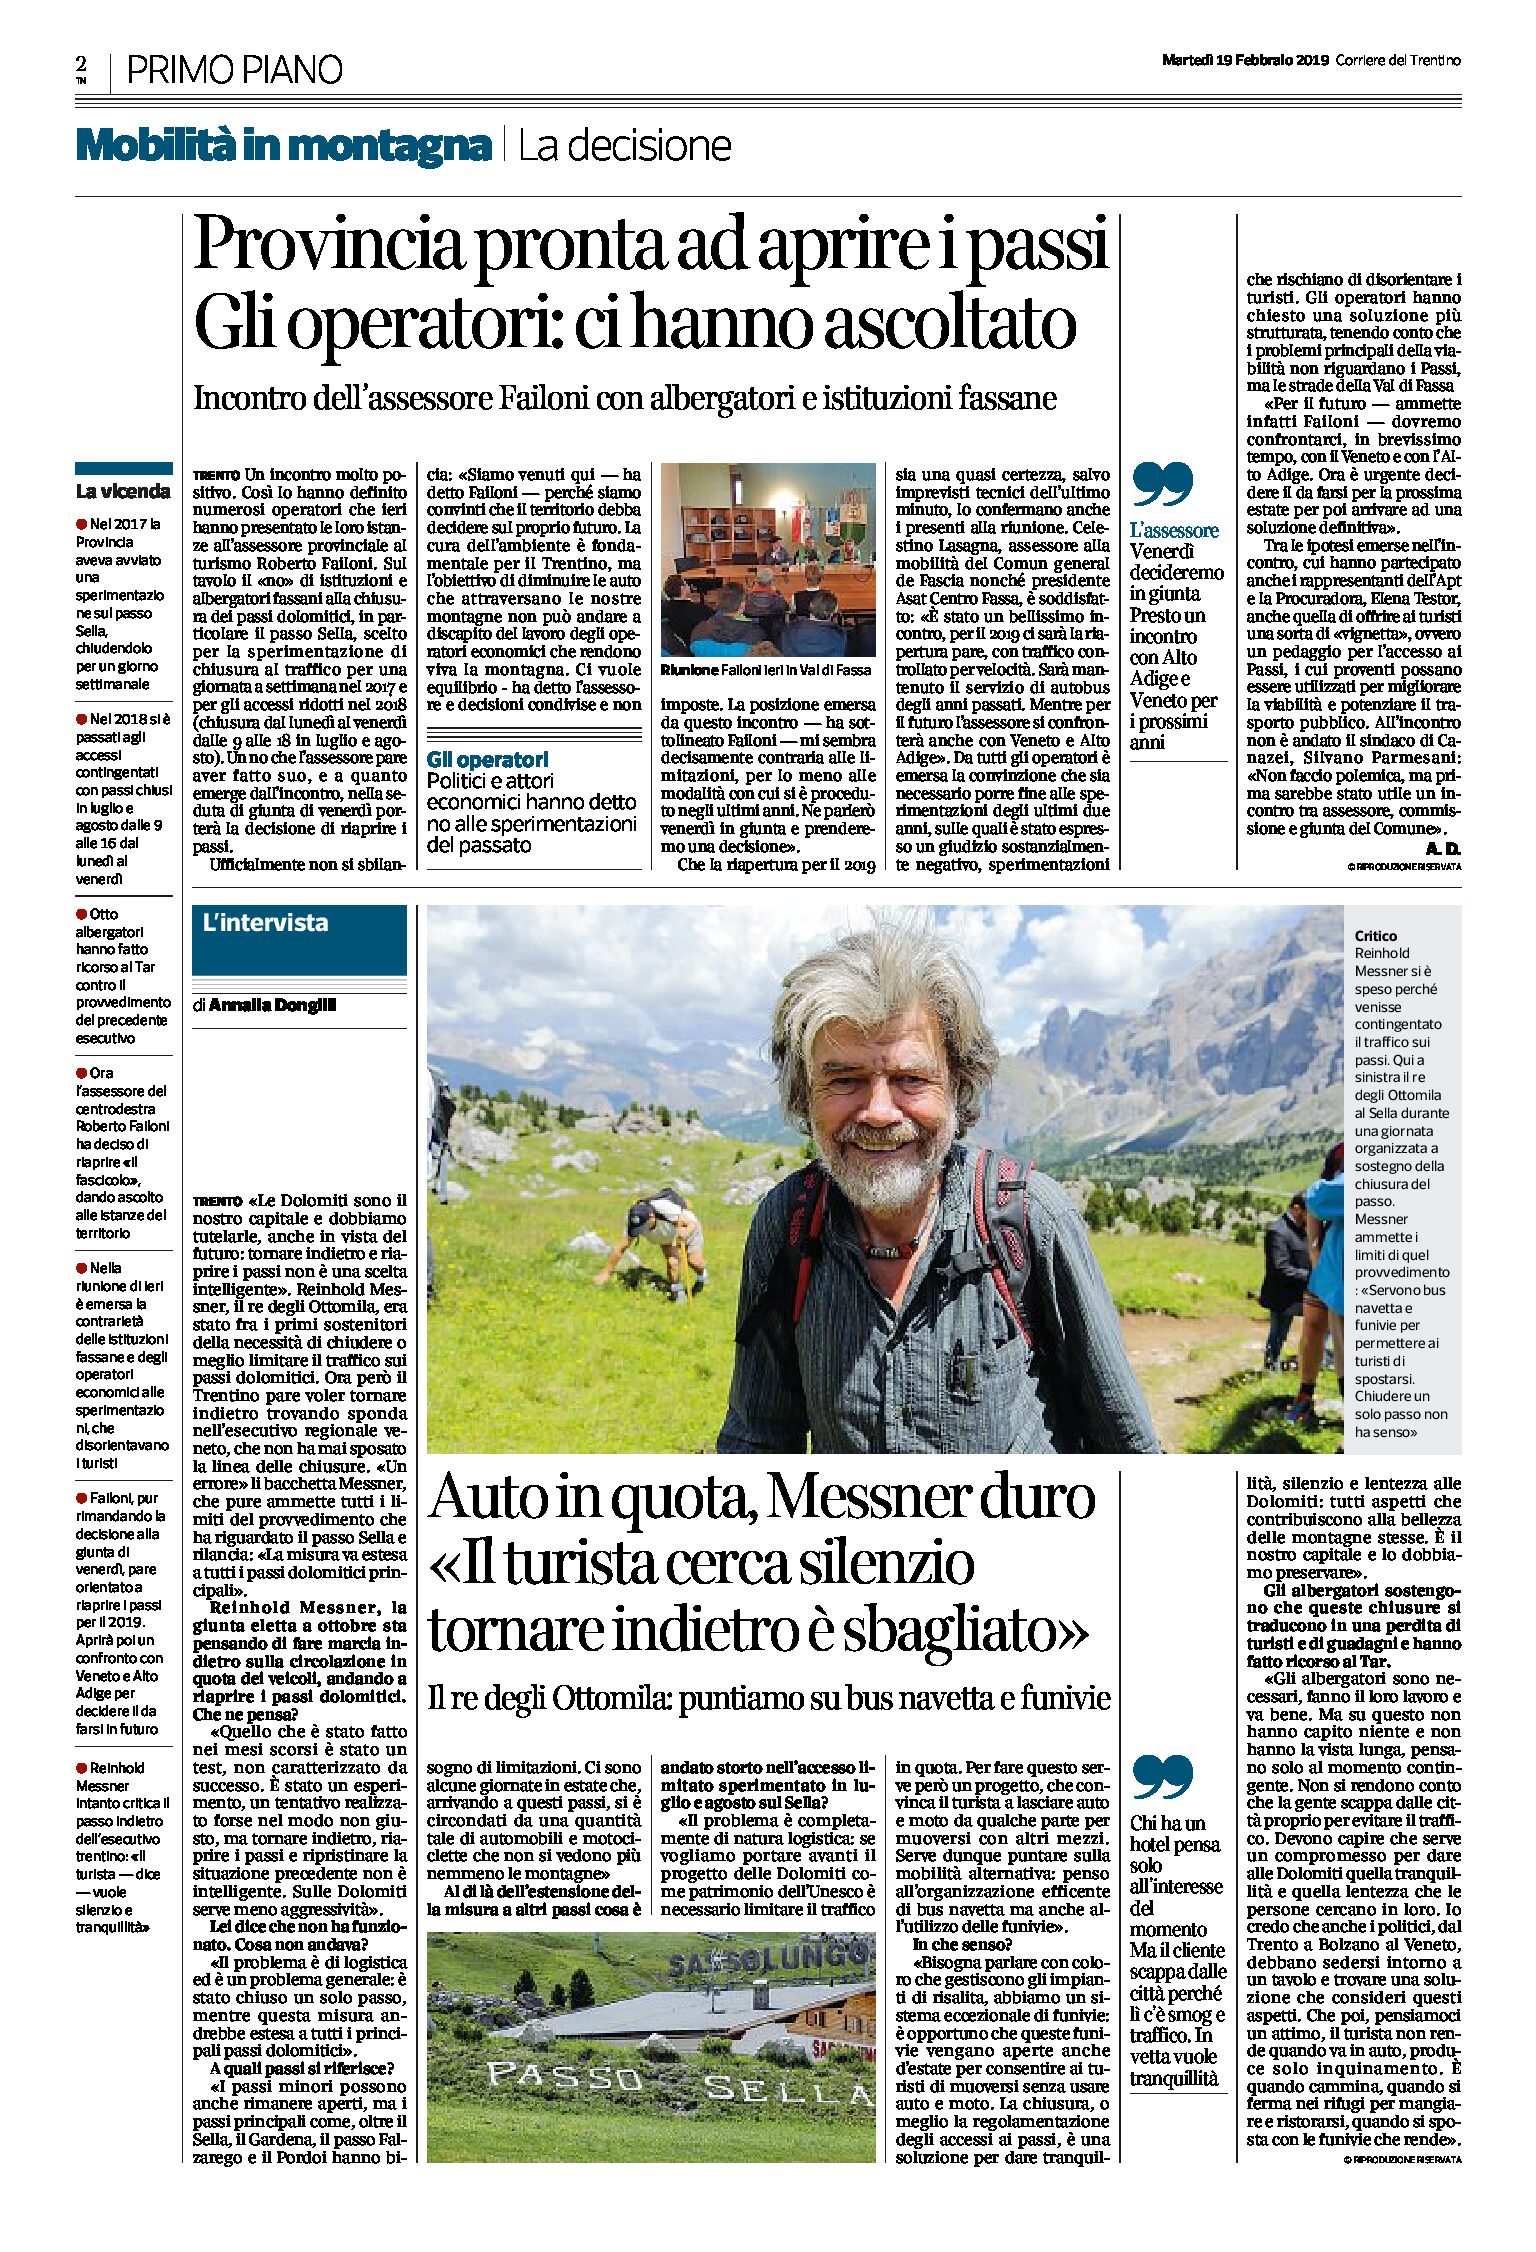 Passi dolomitici: intervista a Messner “il turista cerca silenzio, tornare indietro è sbagliato”